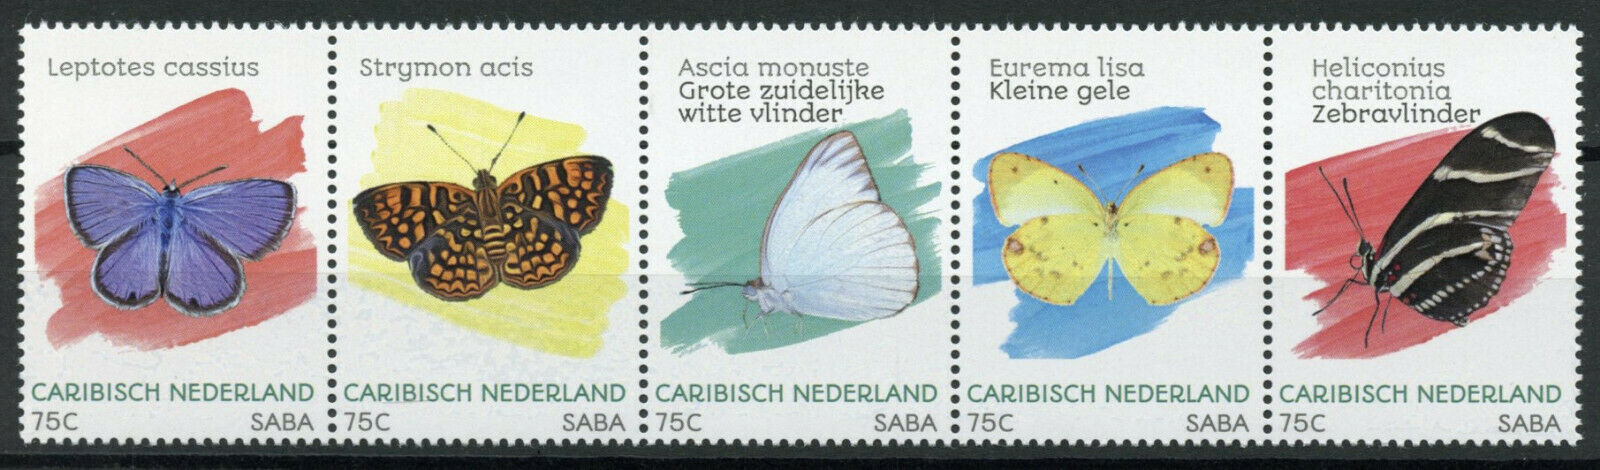 Saba Caribbean Netherlands Butterflies Stamps 2020 MNH Butterfly 5v Strip